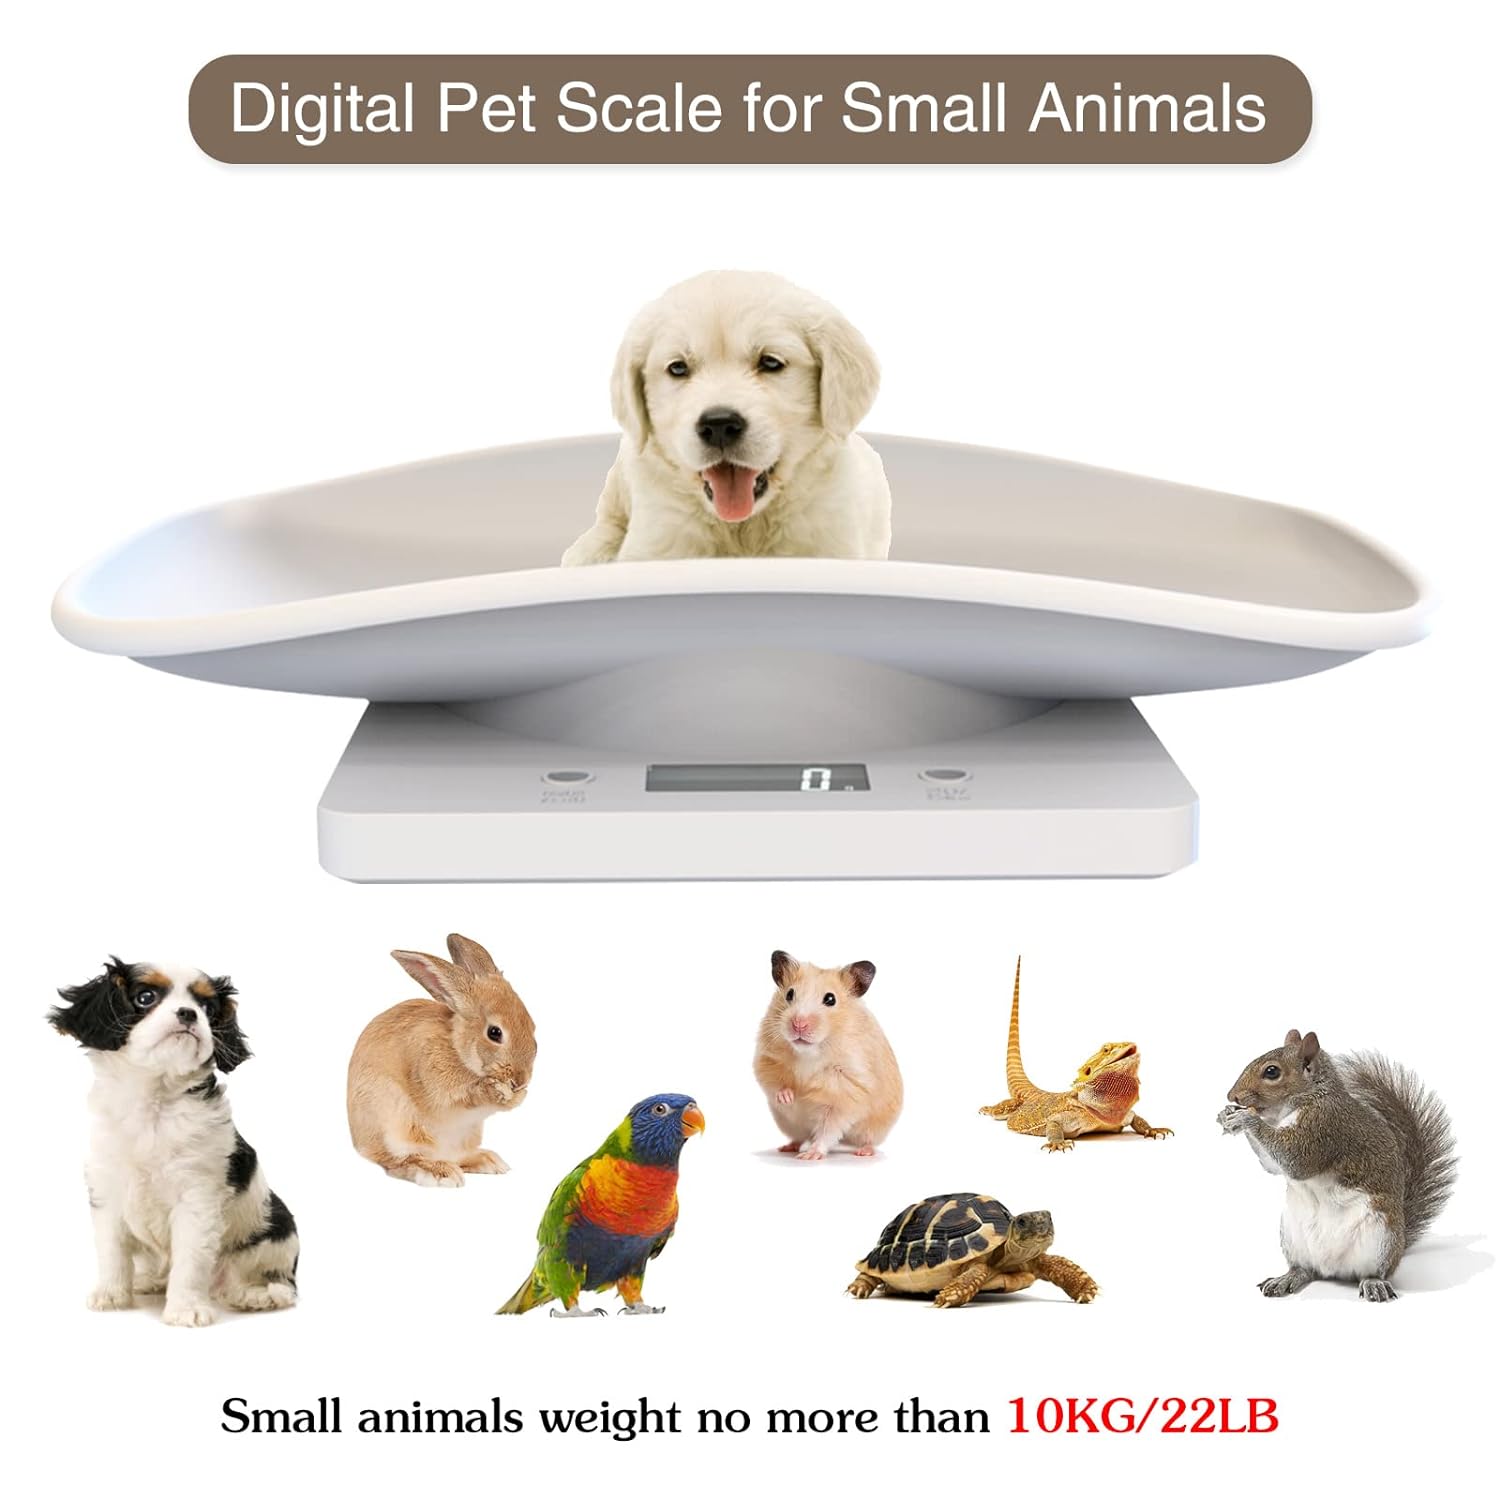 Digital Pet Scale